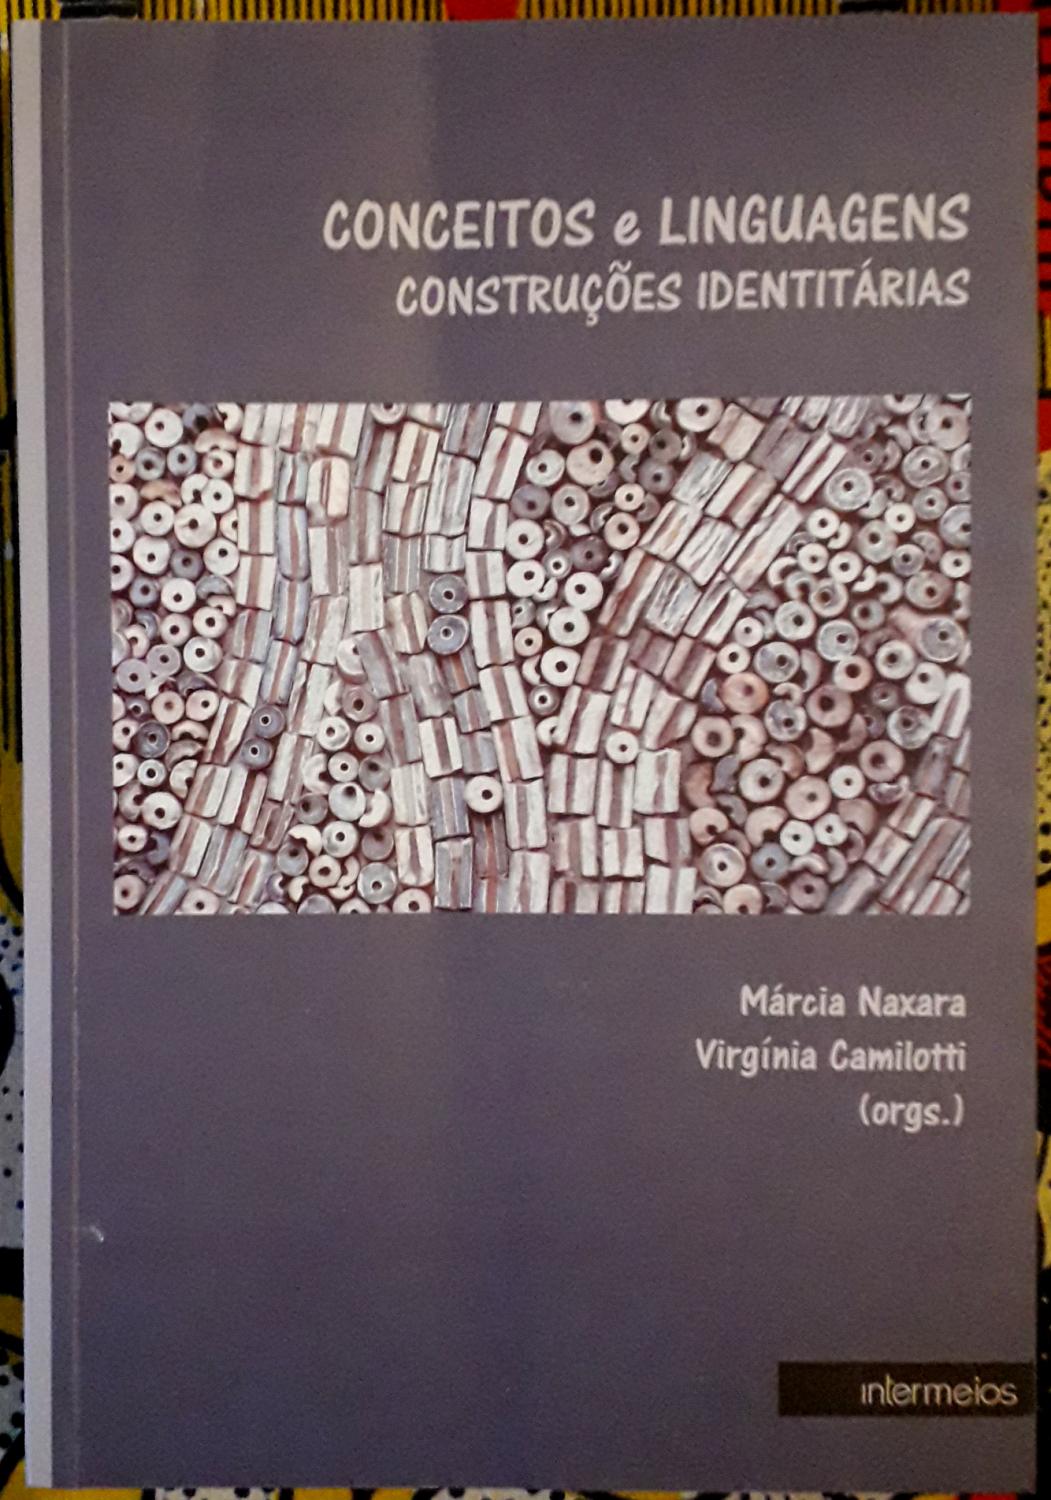 Conceitos e Linguagens - Construções Identitárias - Márcia Naxara - Virgínia Camilotti (eds.)